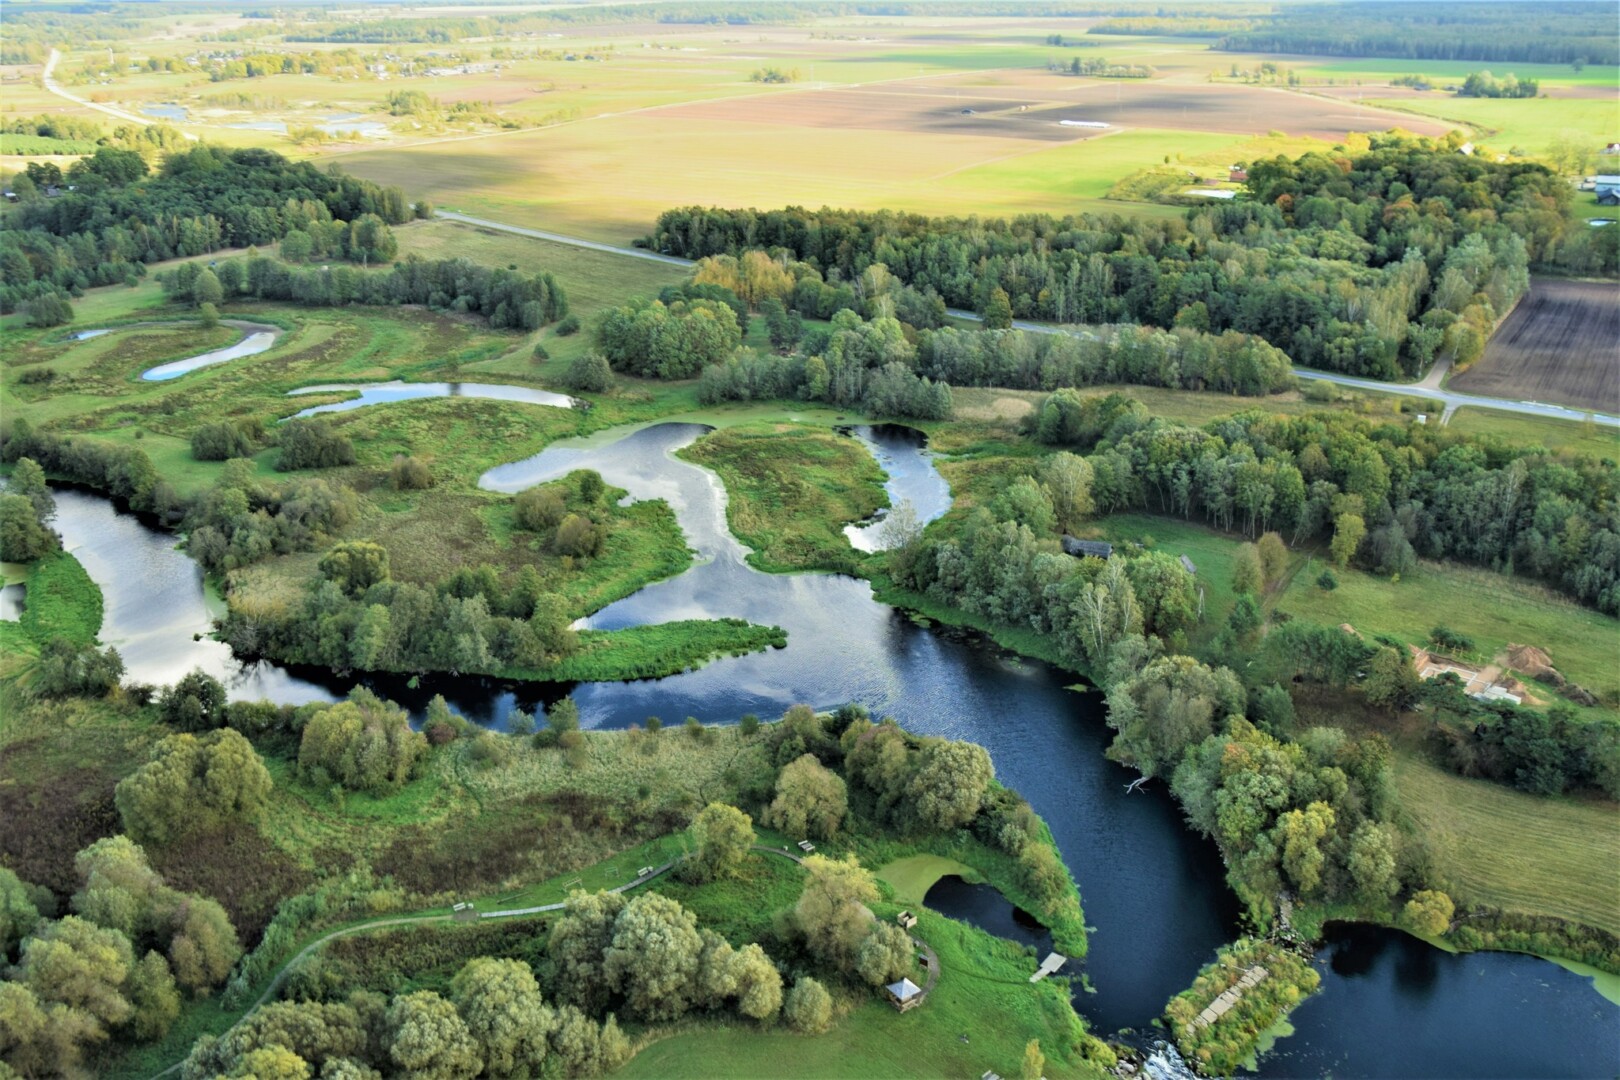 Vienas įdomiausių ir gražiausių Lietuvos gamtos kampelių – Krekenavos regioninis parkas – nebe pirmus metus sudarkomas keturratininkų ir motociklininkų. KREKENAVOS REGIONINIO PARKO nuotr.